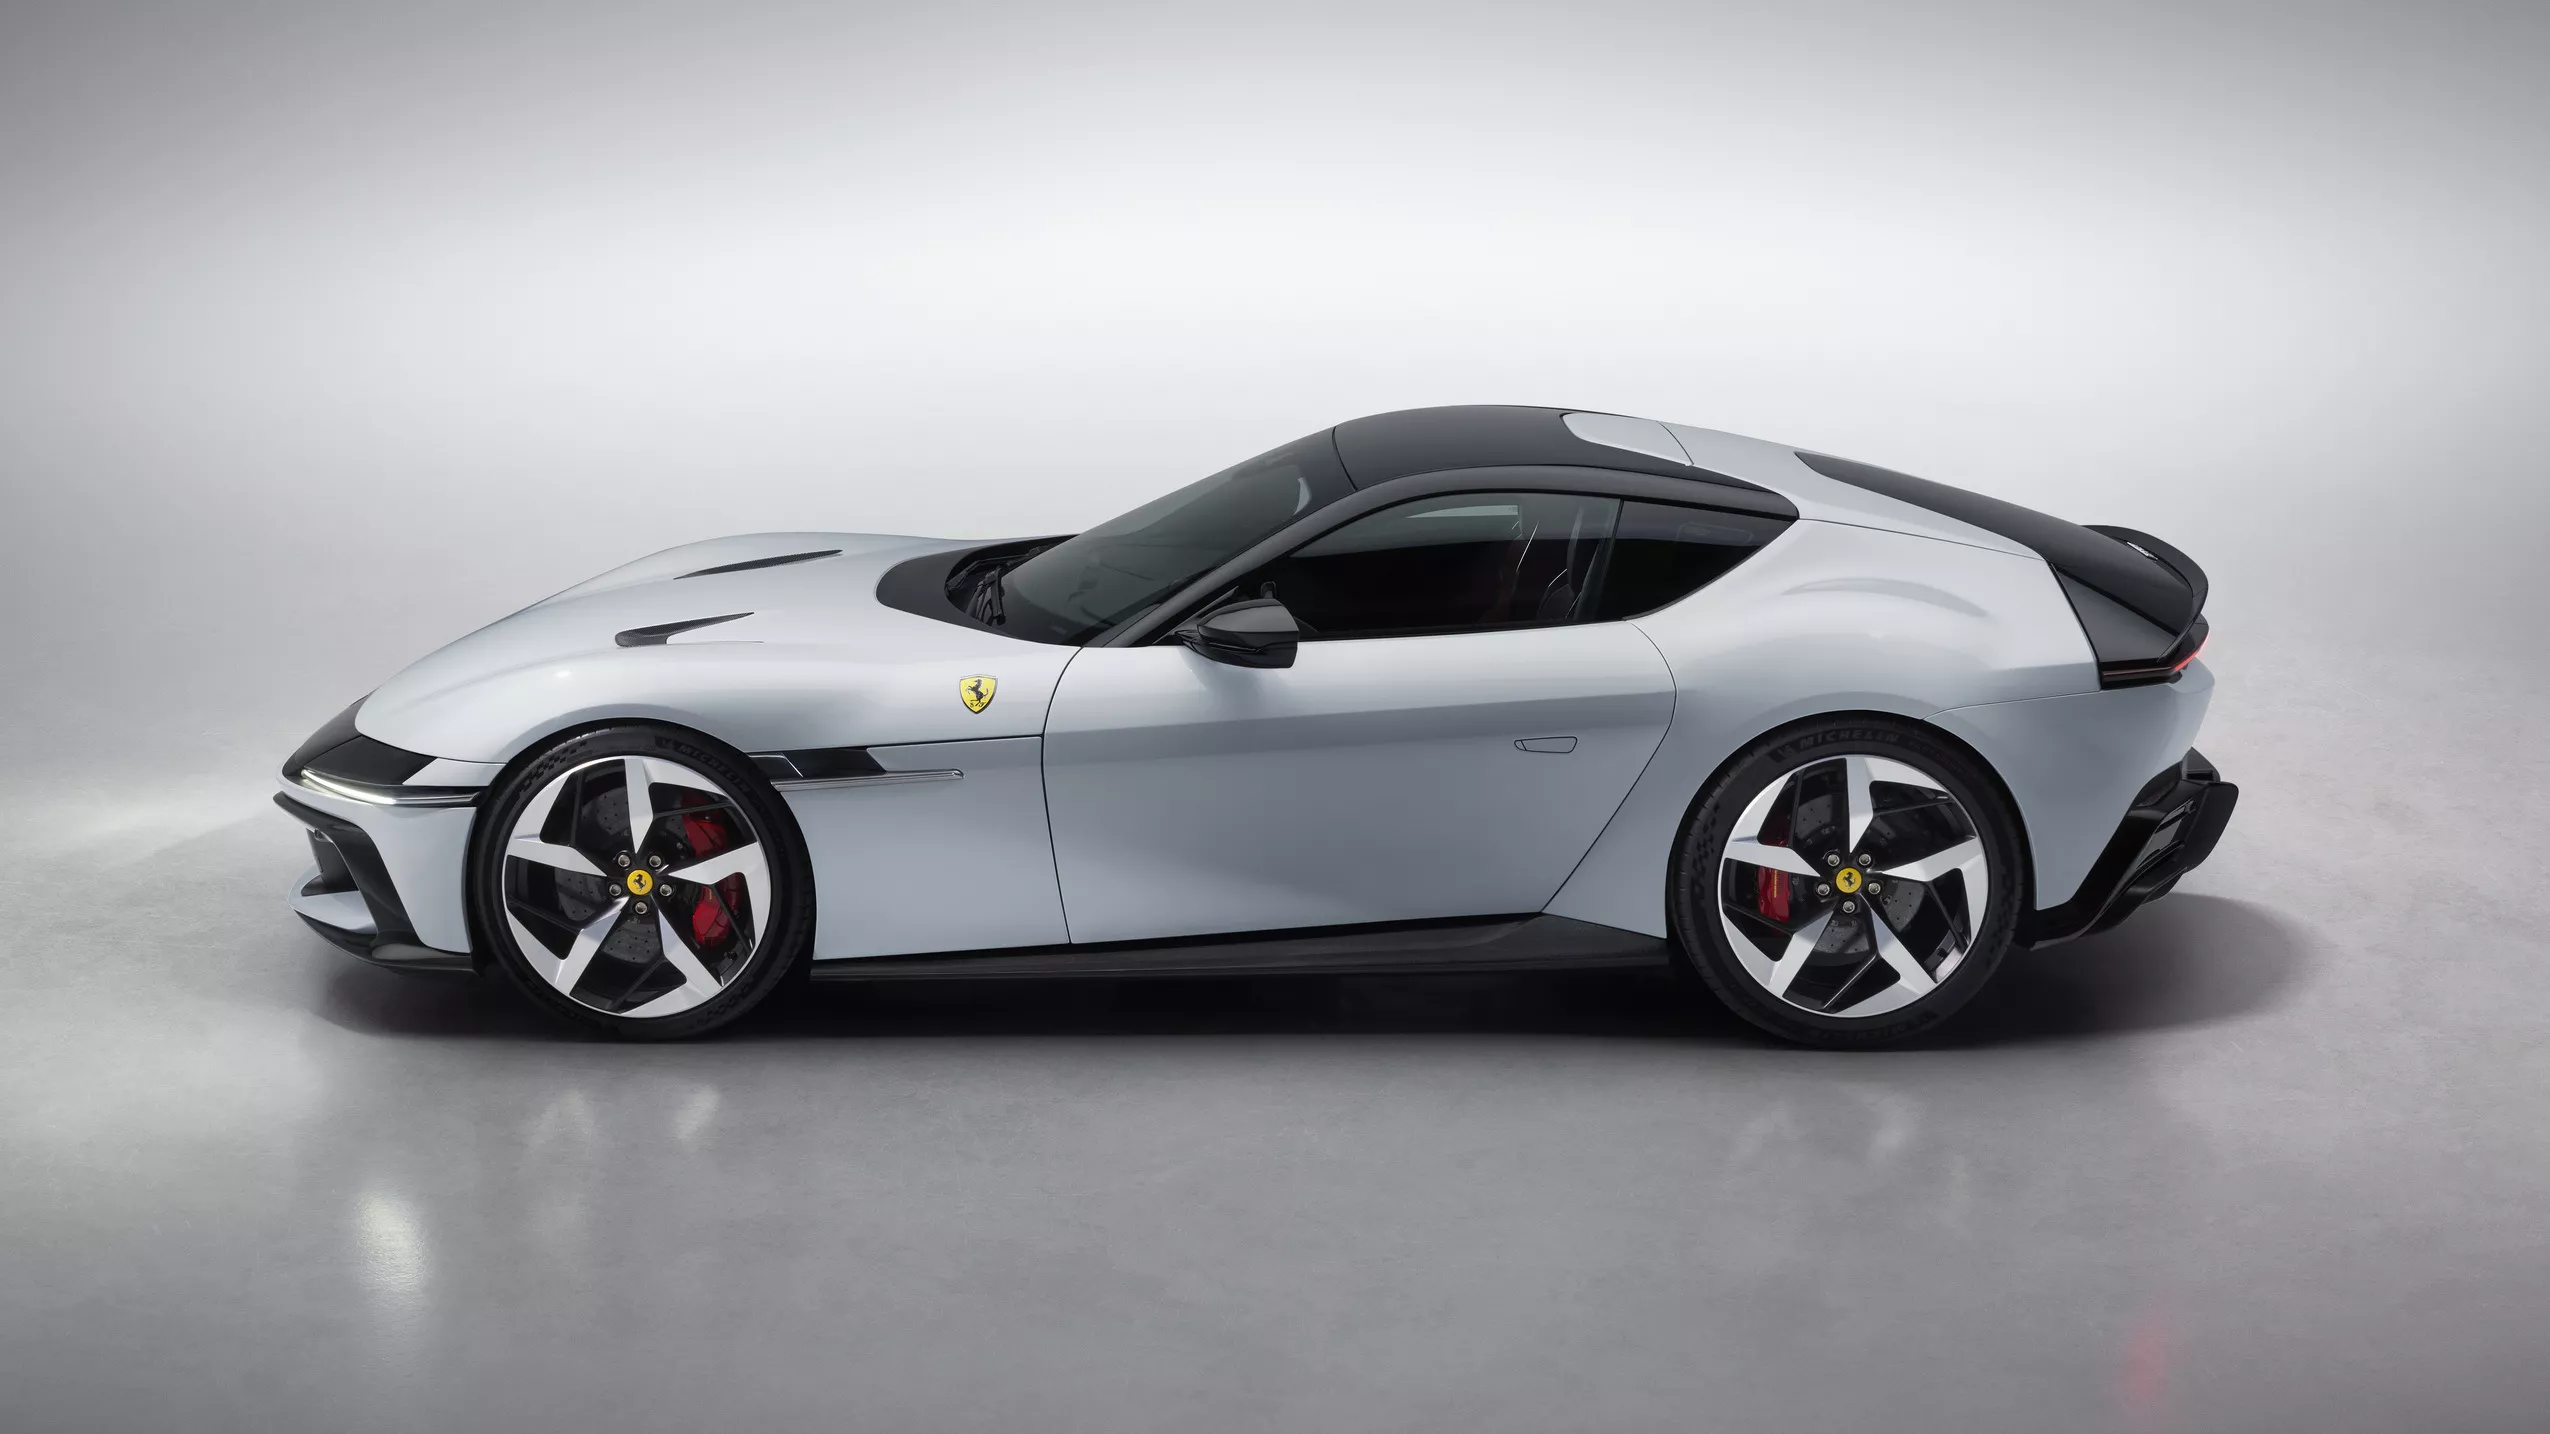 New_Ferrari_V12_ext_02_white_media.webp